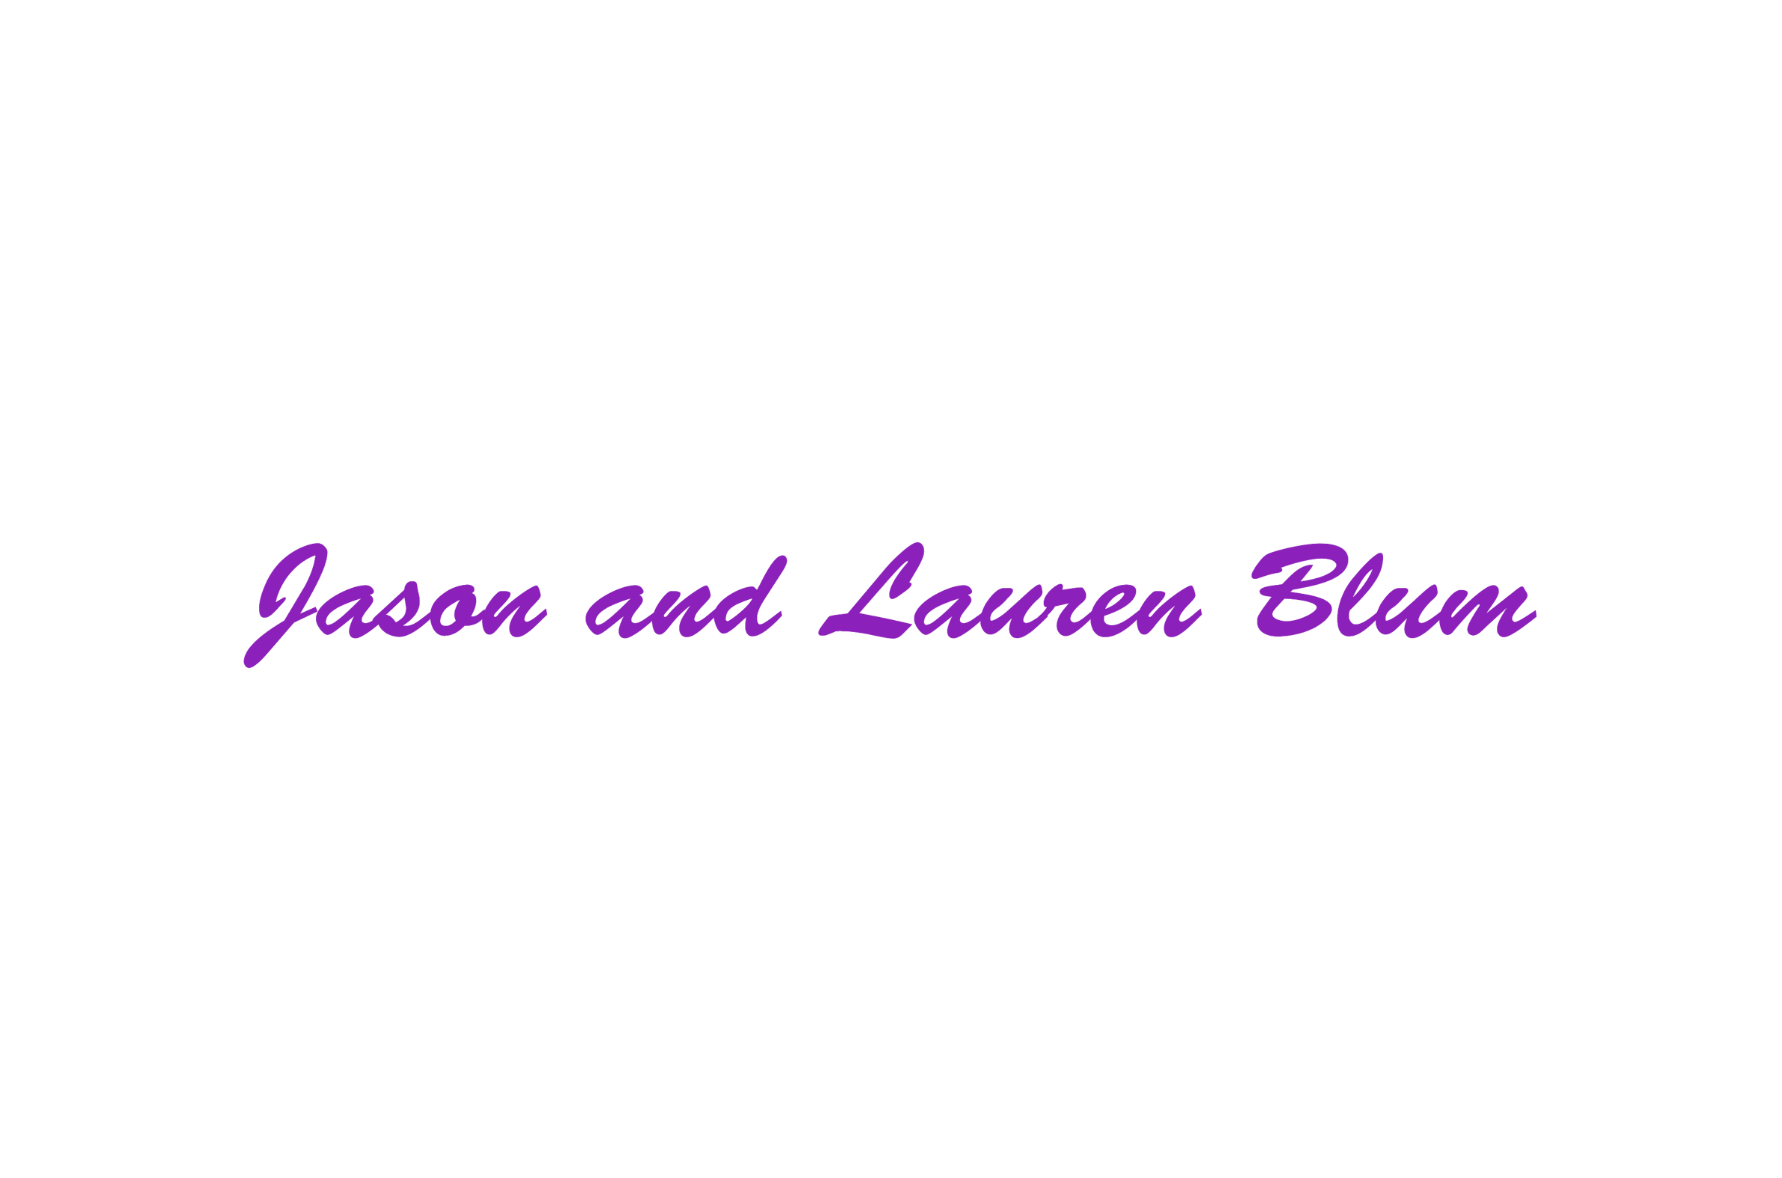 OIC_Jason and Lauren Blum_logo